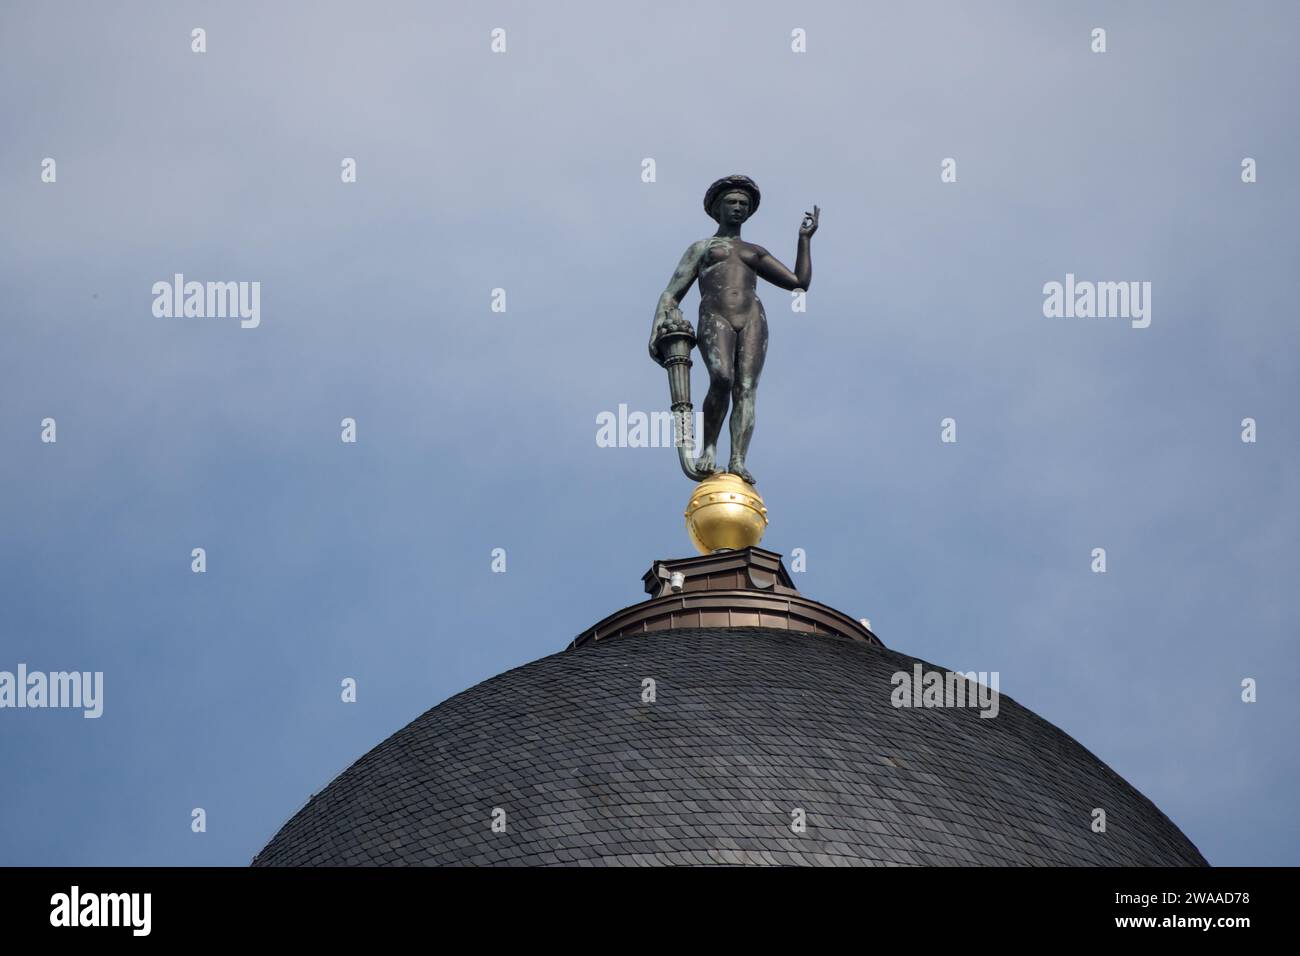 L'immagine mostra una statua dorata arroccata sulla cima di una cupola storica di Berlino, che incarna il ricco patrimonio culturale e l'espressione artistica della città. Foto Stock